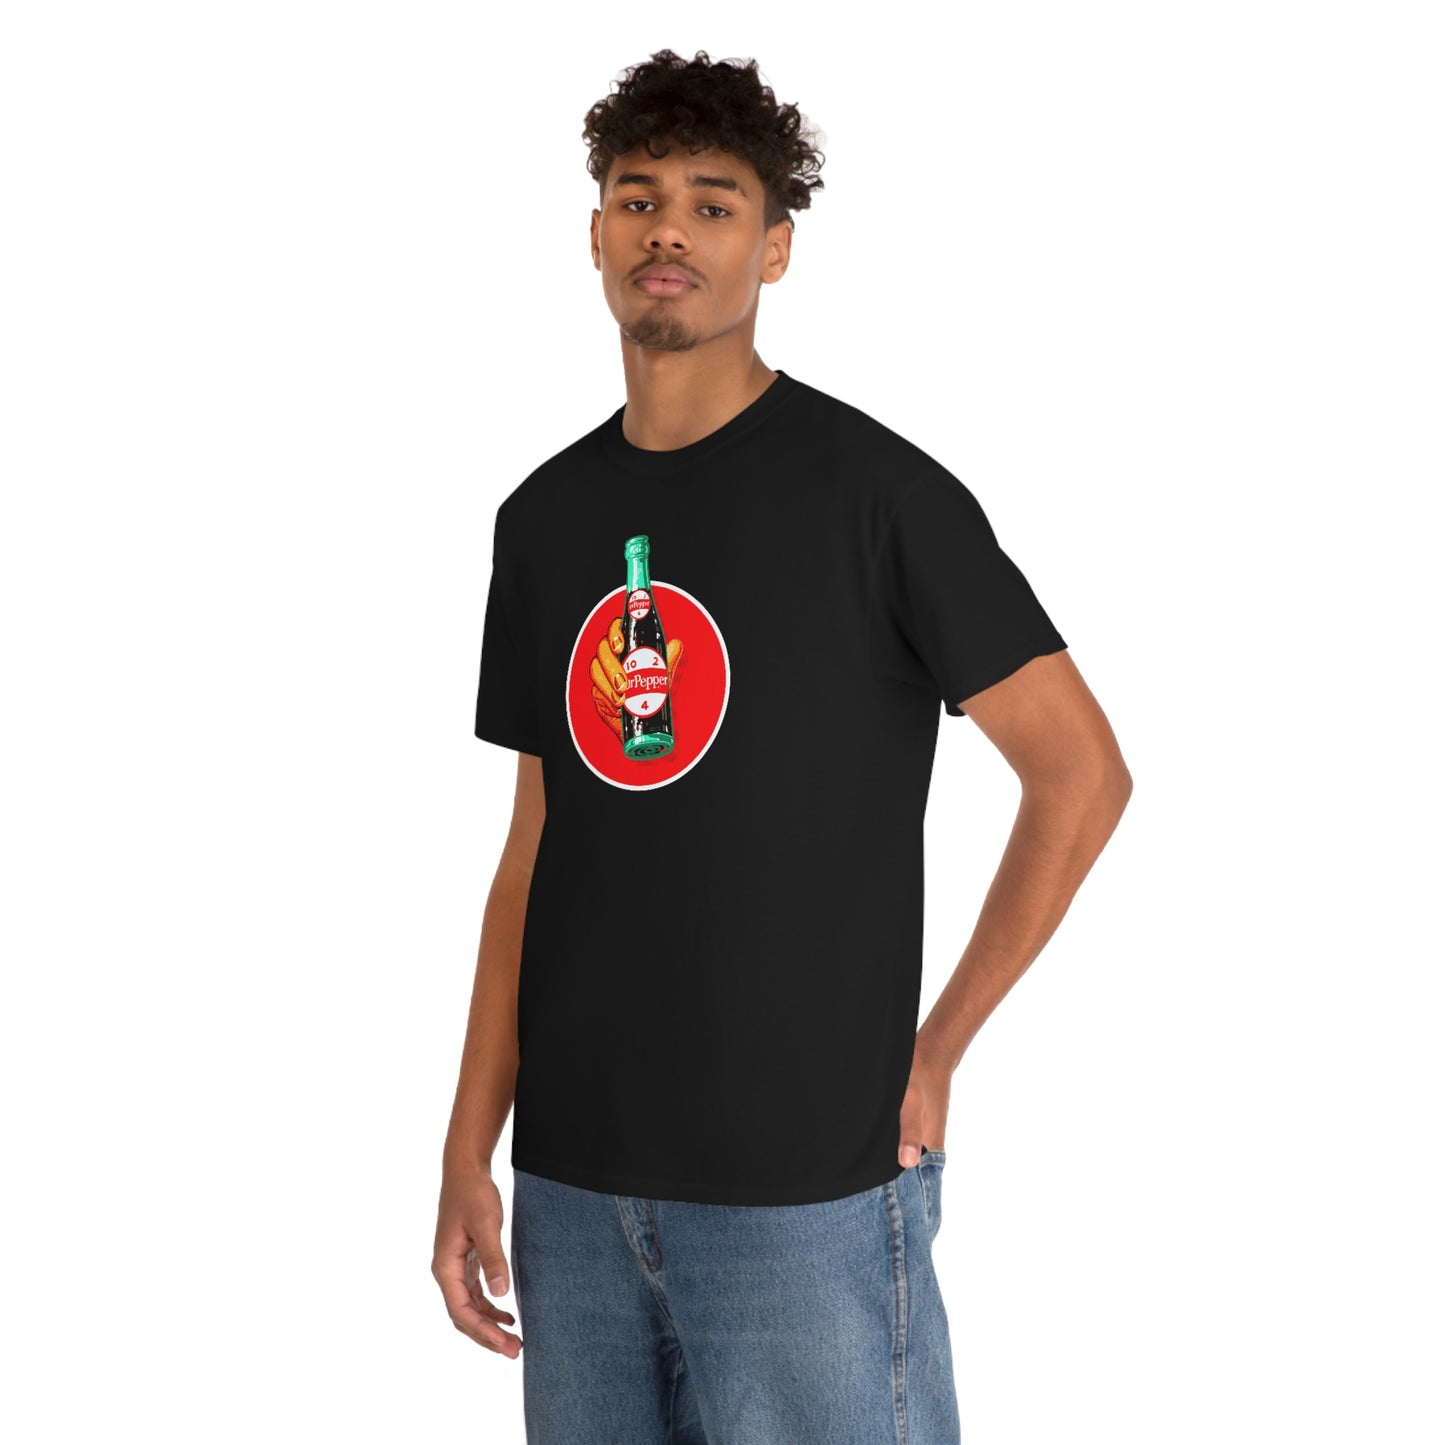 Dr. Pepper T-Shirt